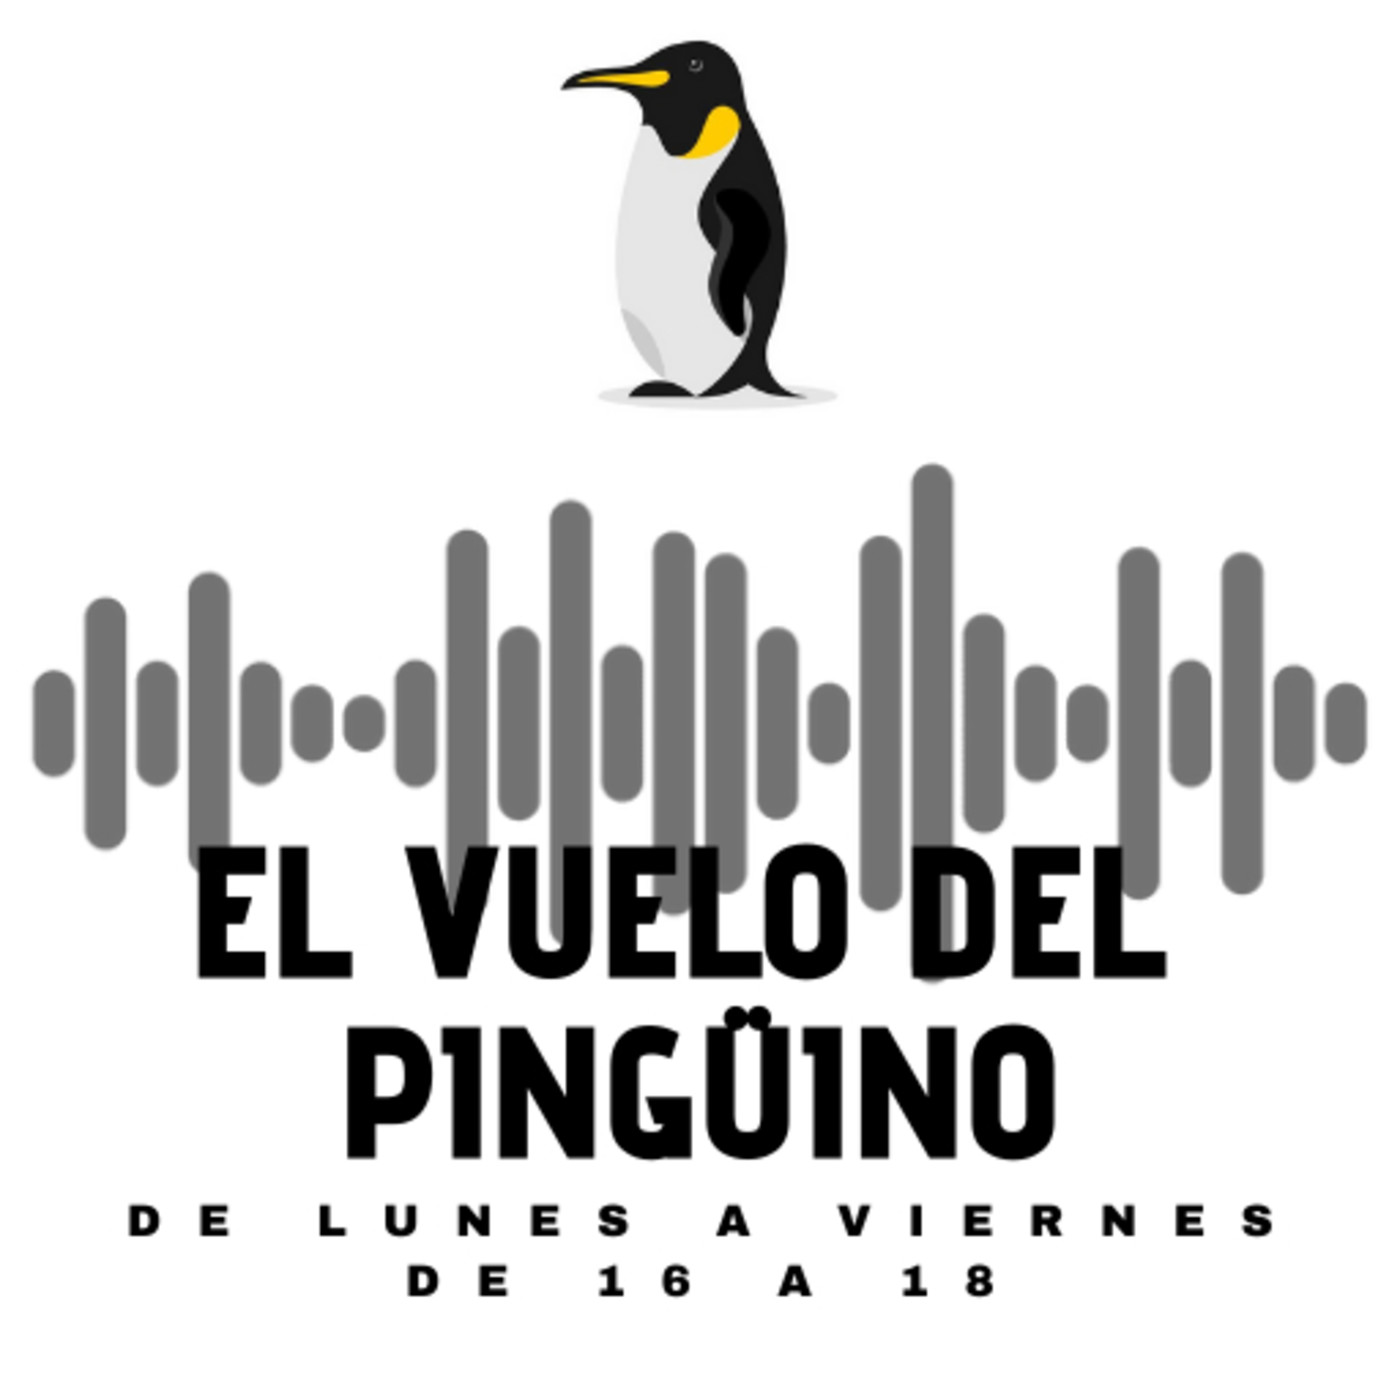 El vuelo del Pingüino - Actualidad, humor, cultura y música - 14-07-2021